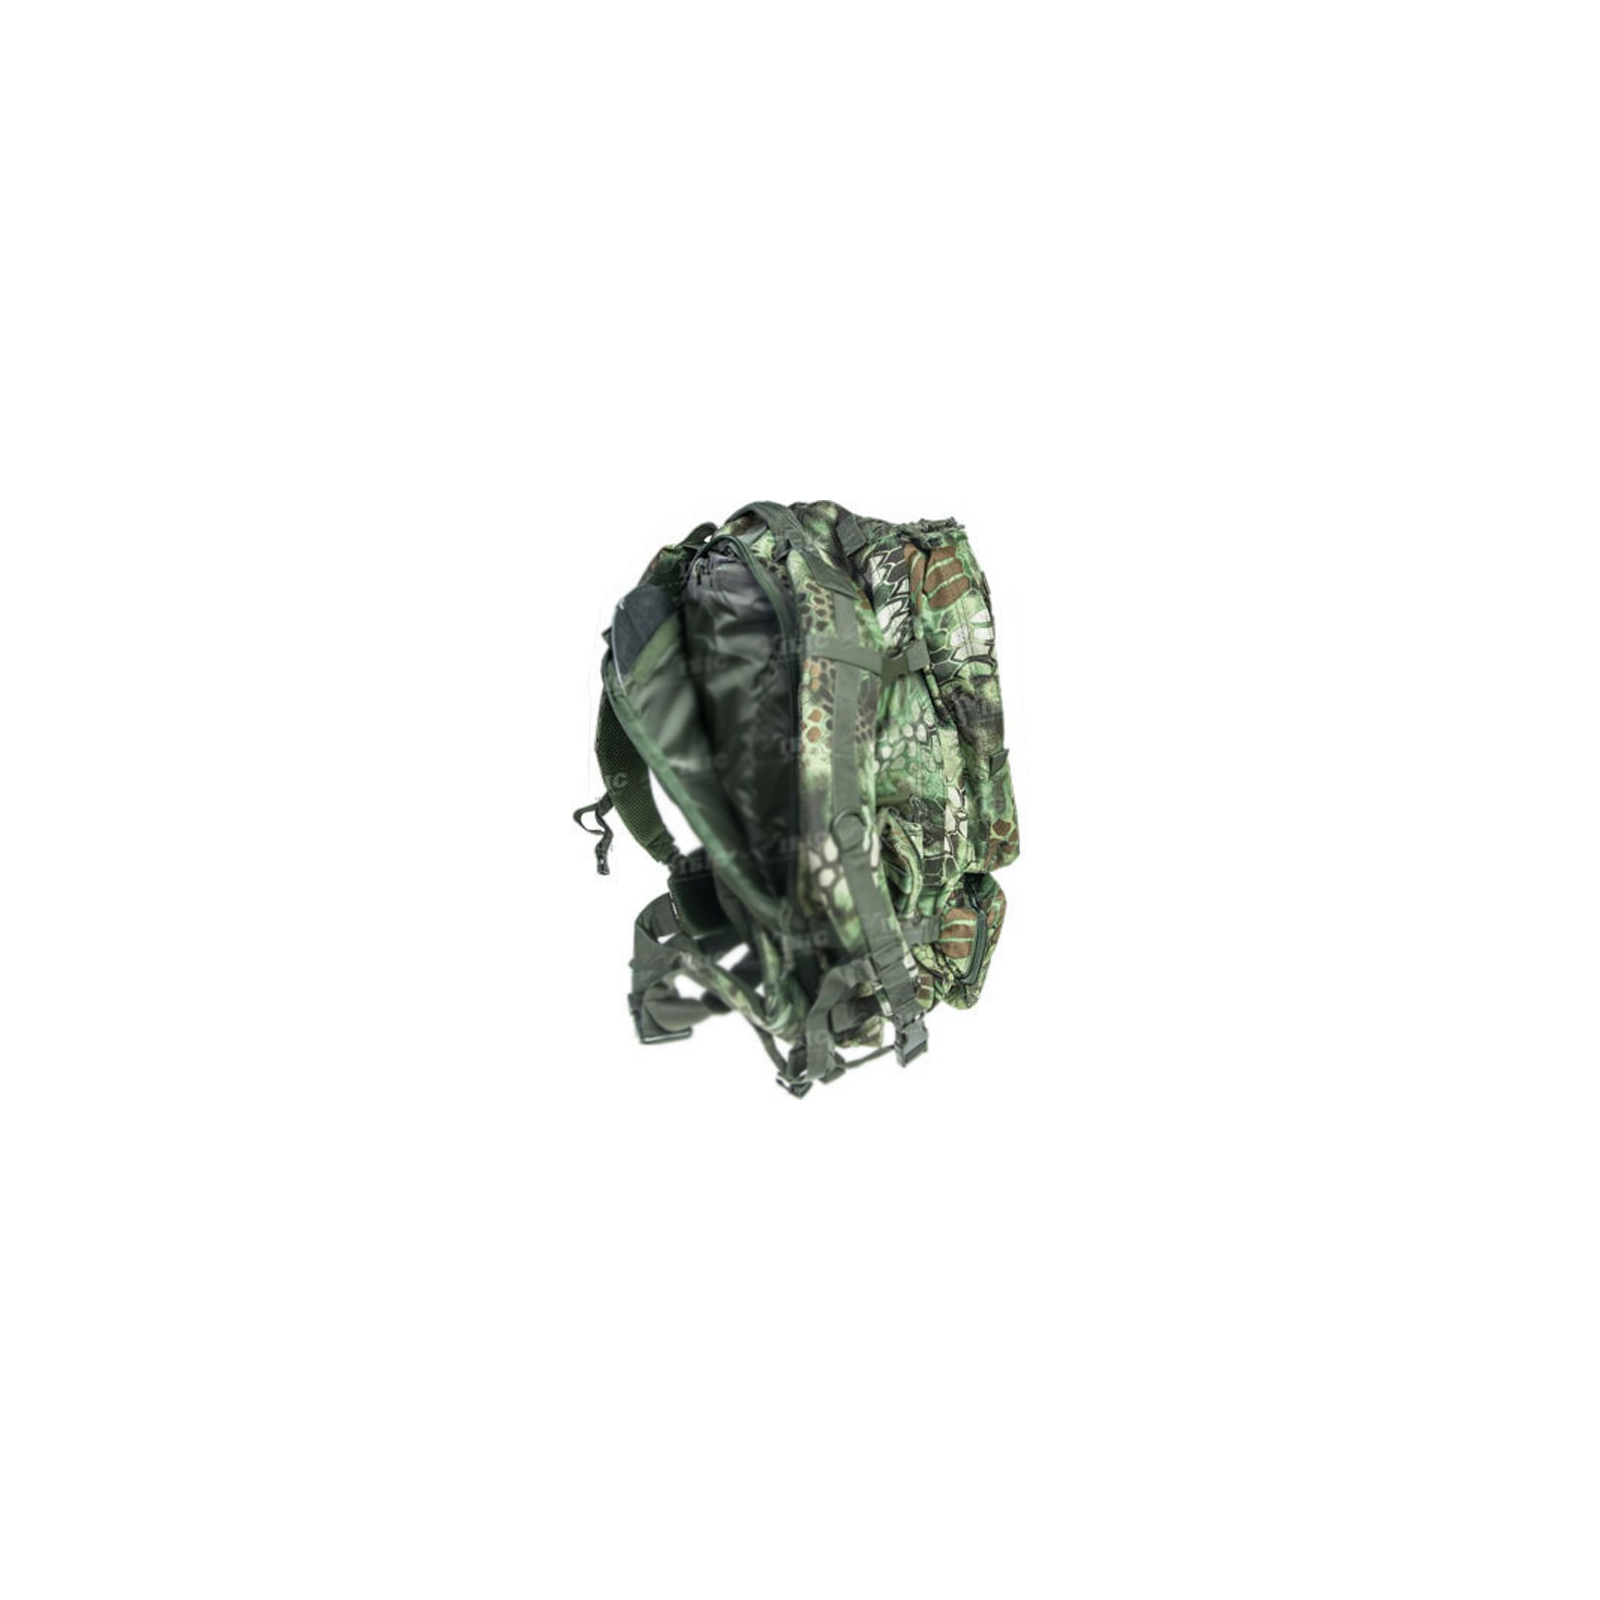 Рюкзак туристический Skif Tac тактический 3-х дневный 45 литров kryptek green (2795.02.55) изображение 3